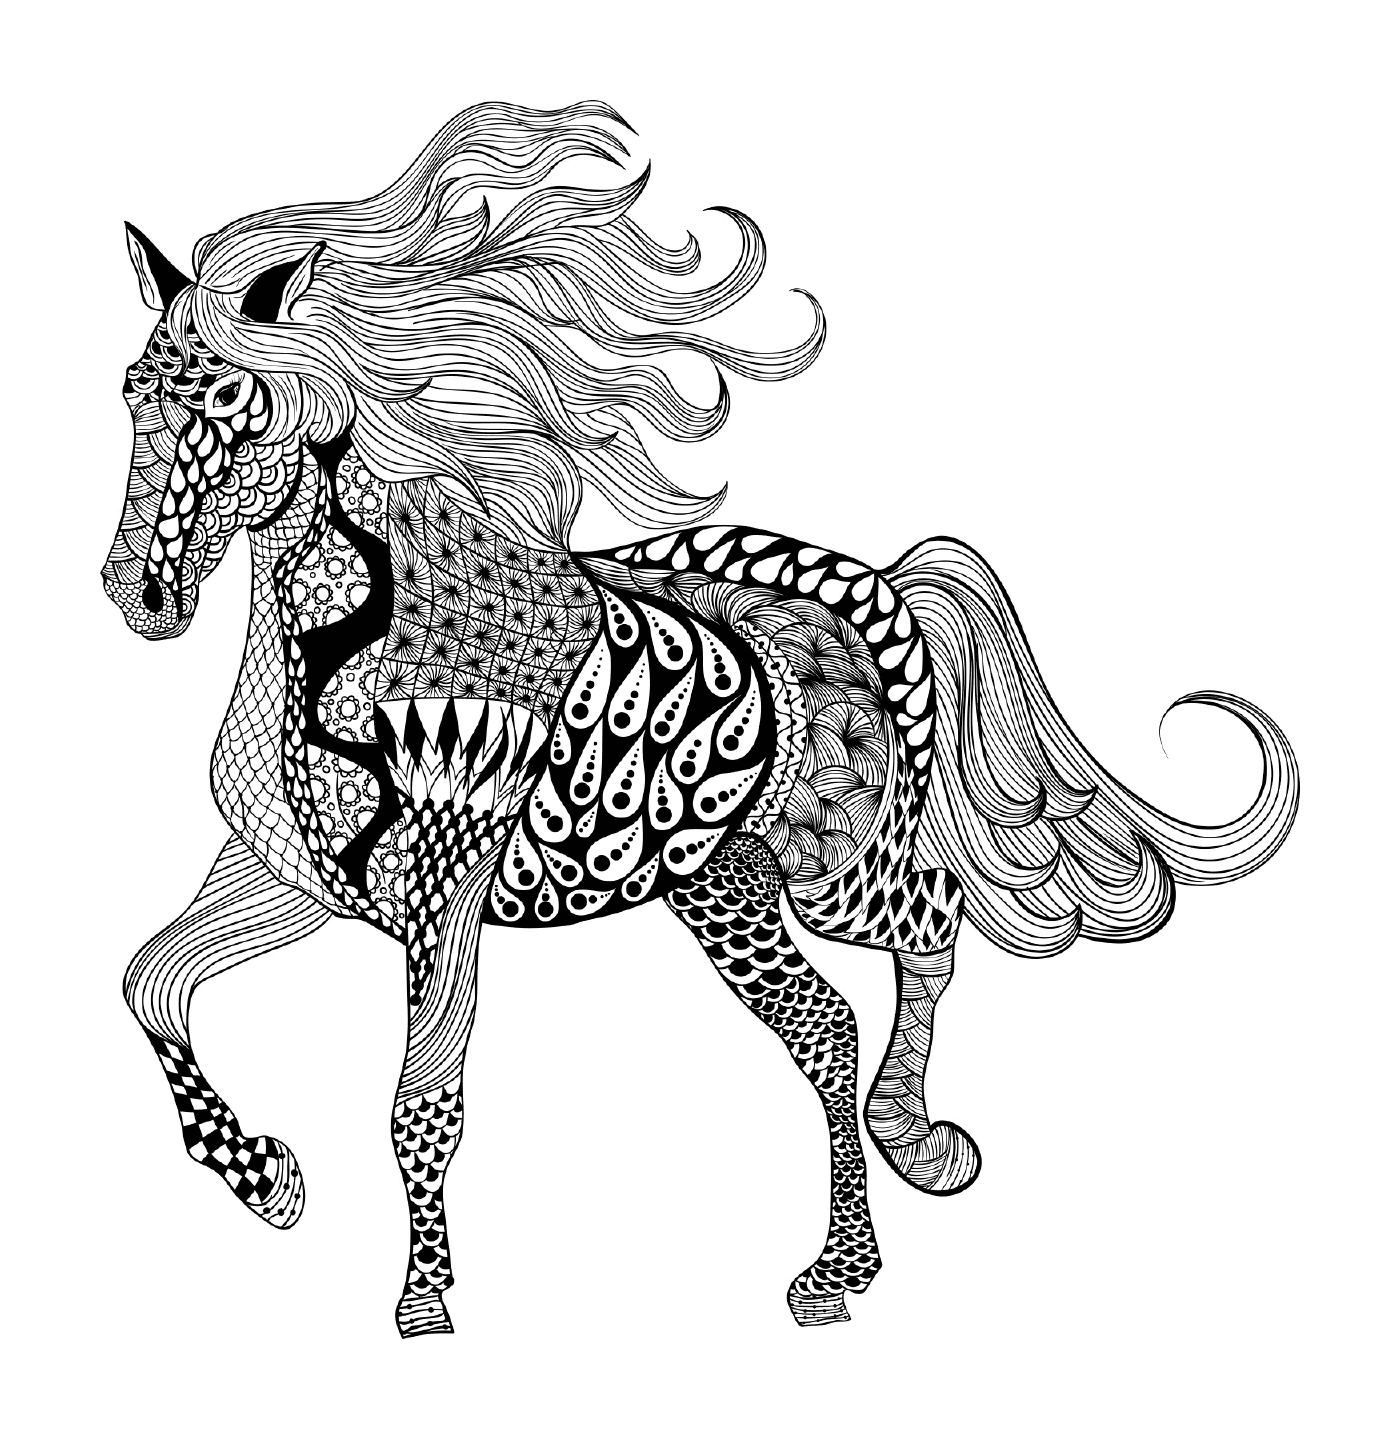  एक घोड़ा 